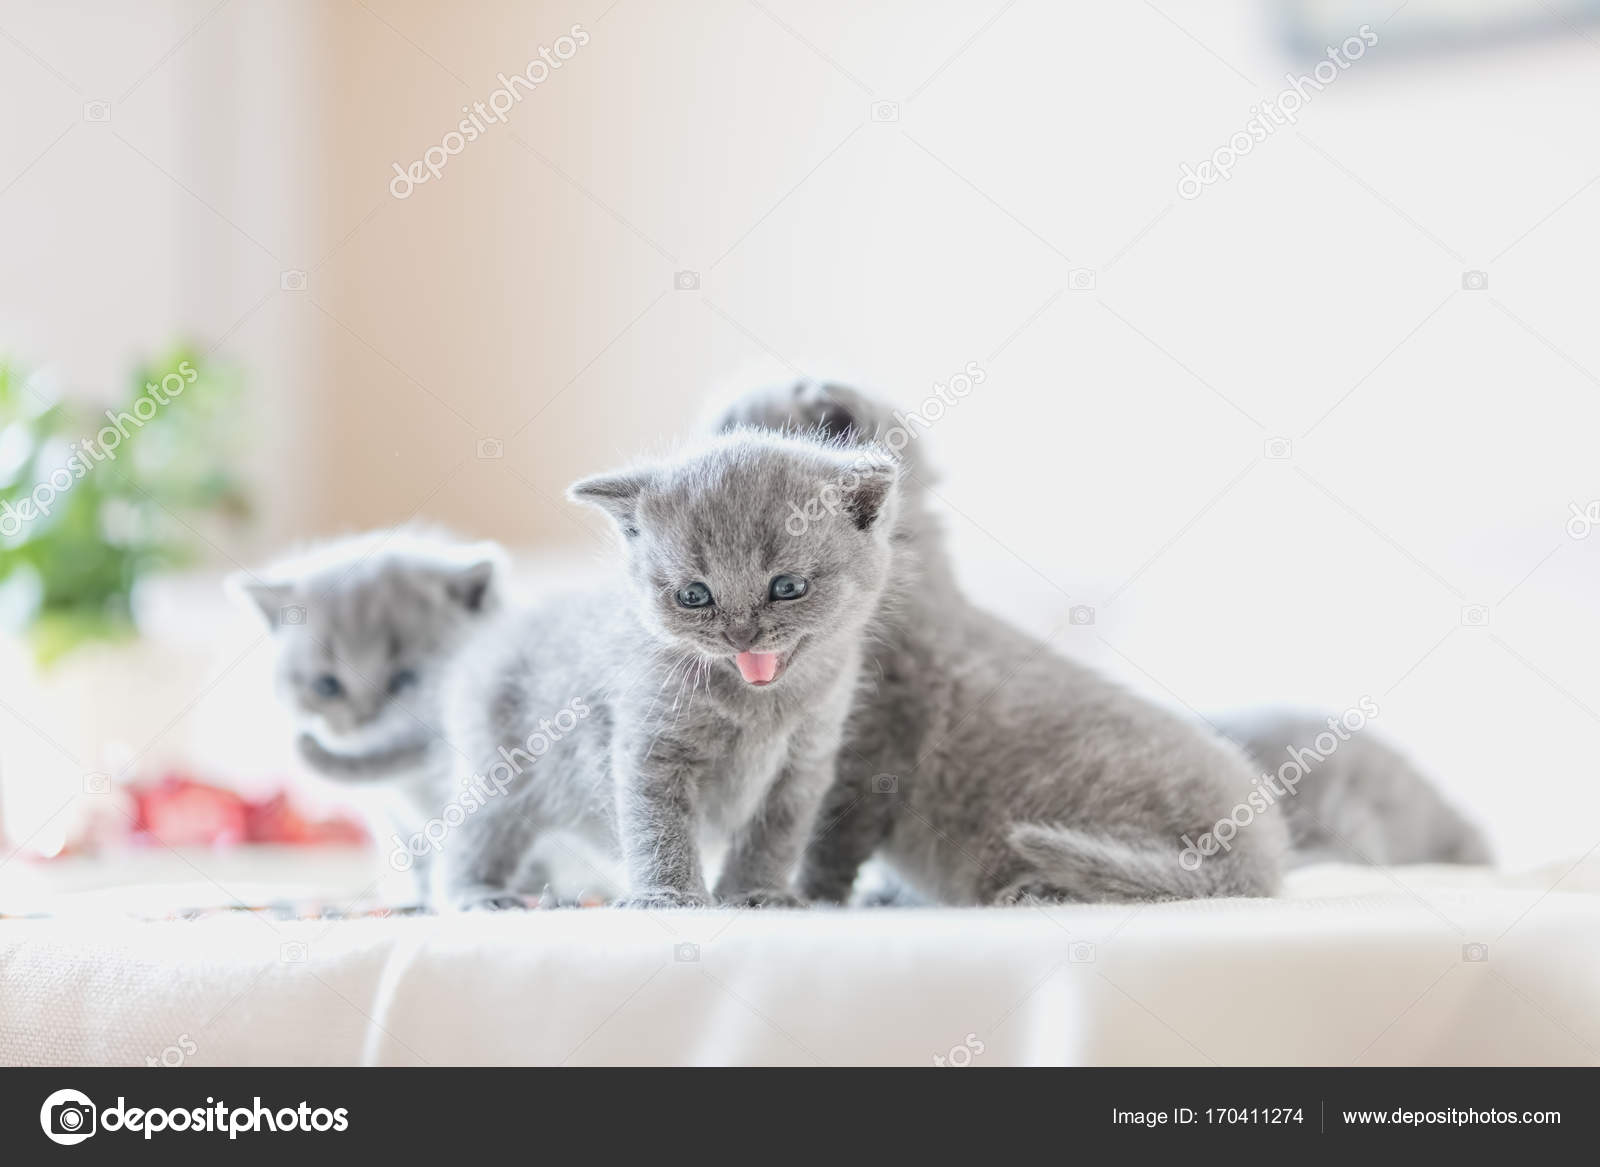 vrije tijd Het formulier alledaags Pups van kittens in huis. — Stockfoto © Photocreo #170411274